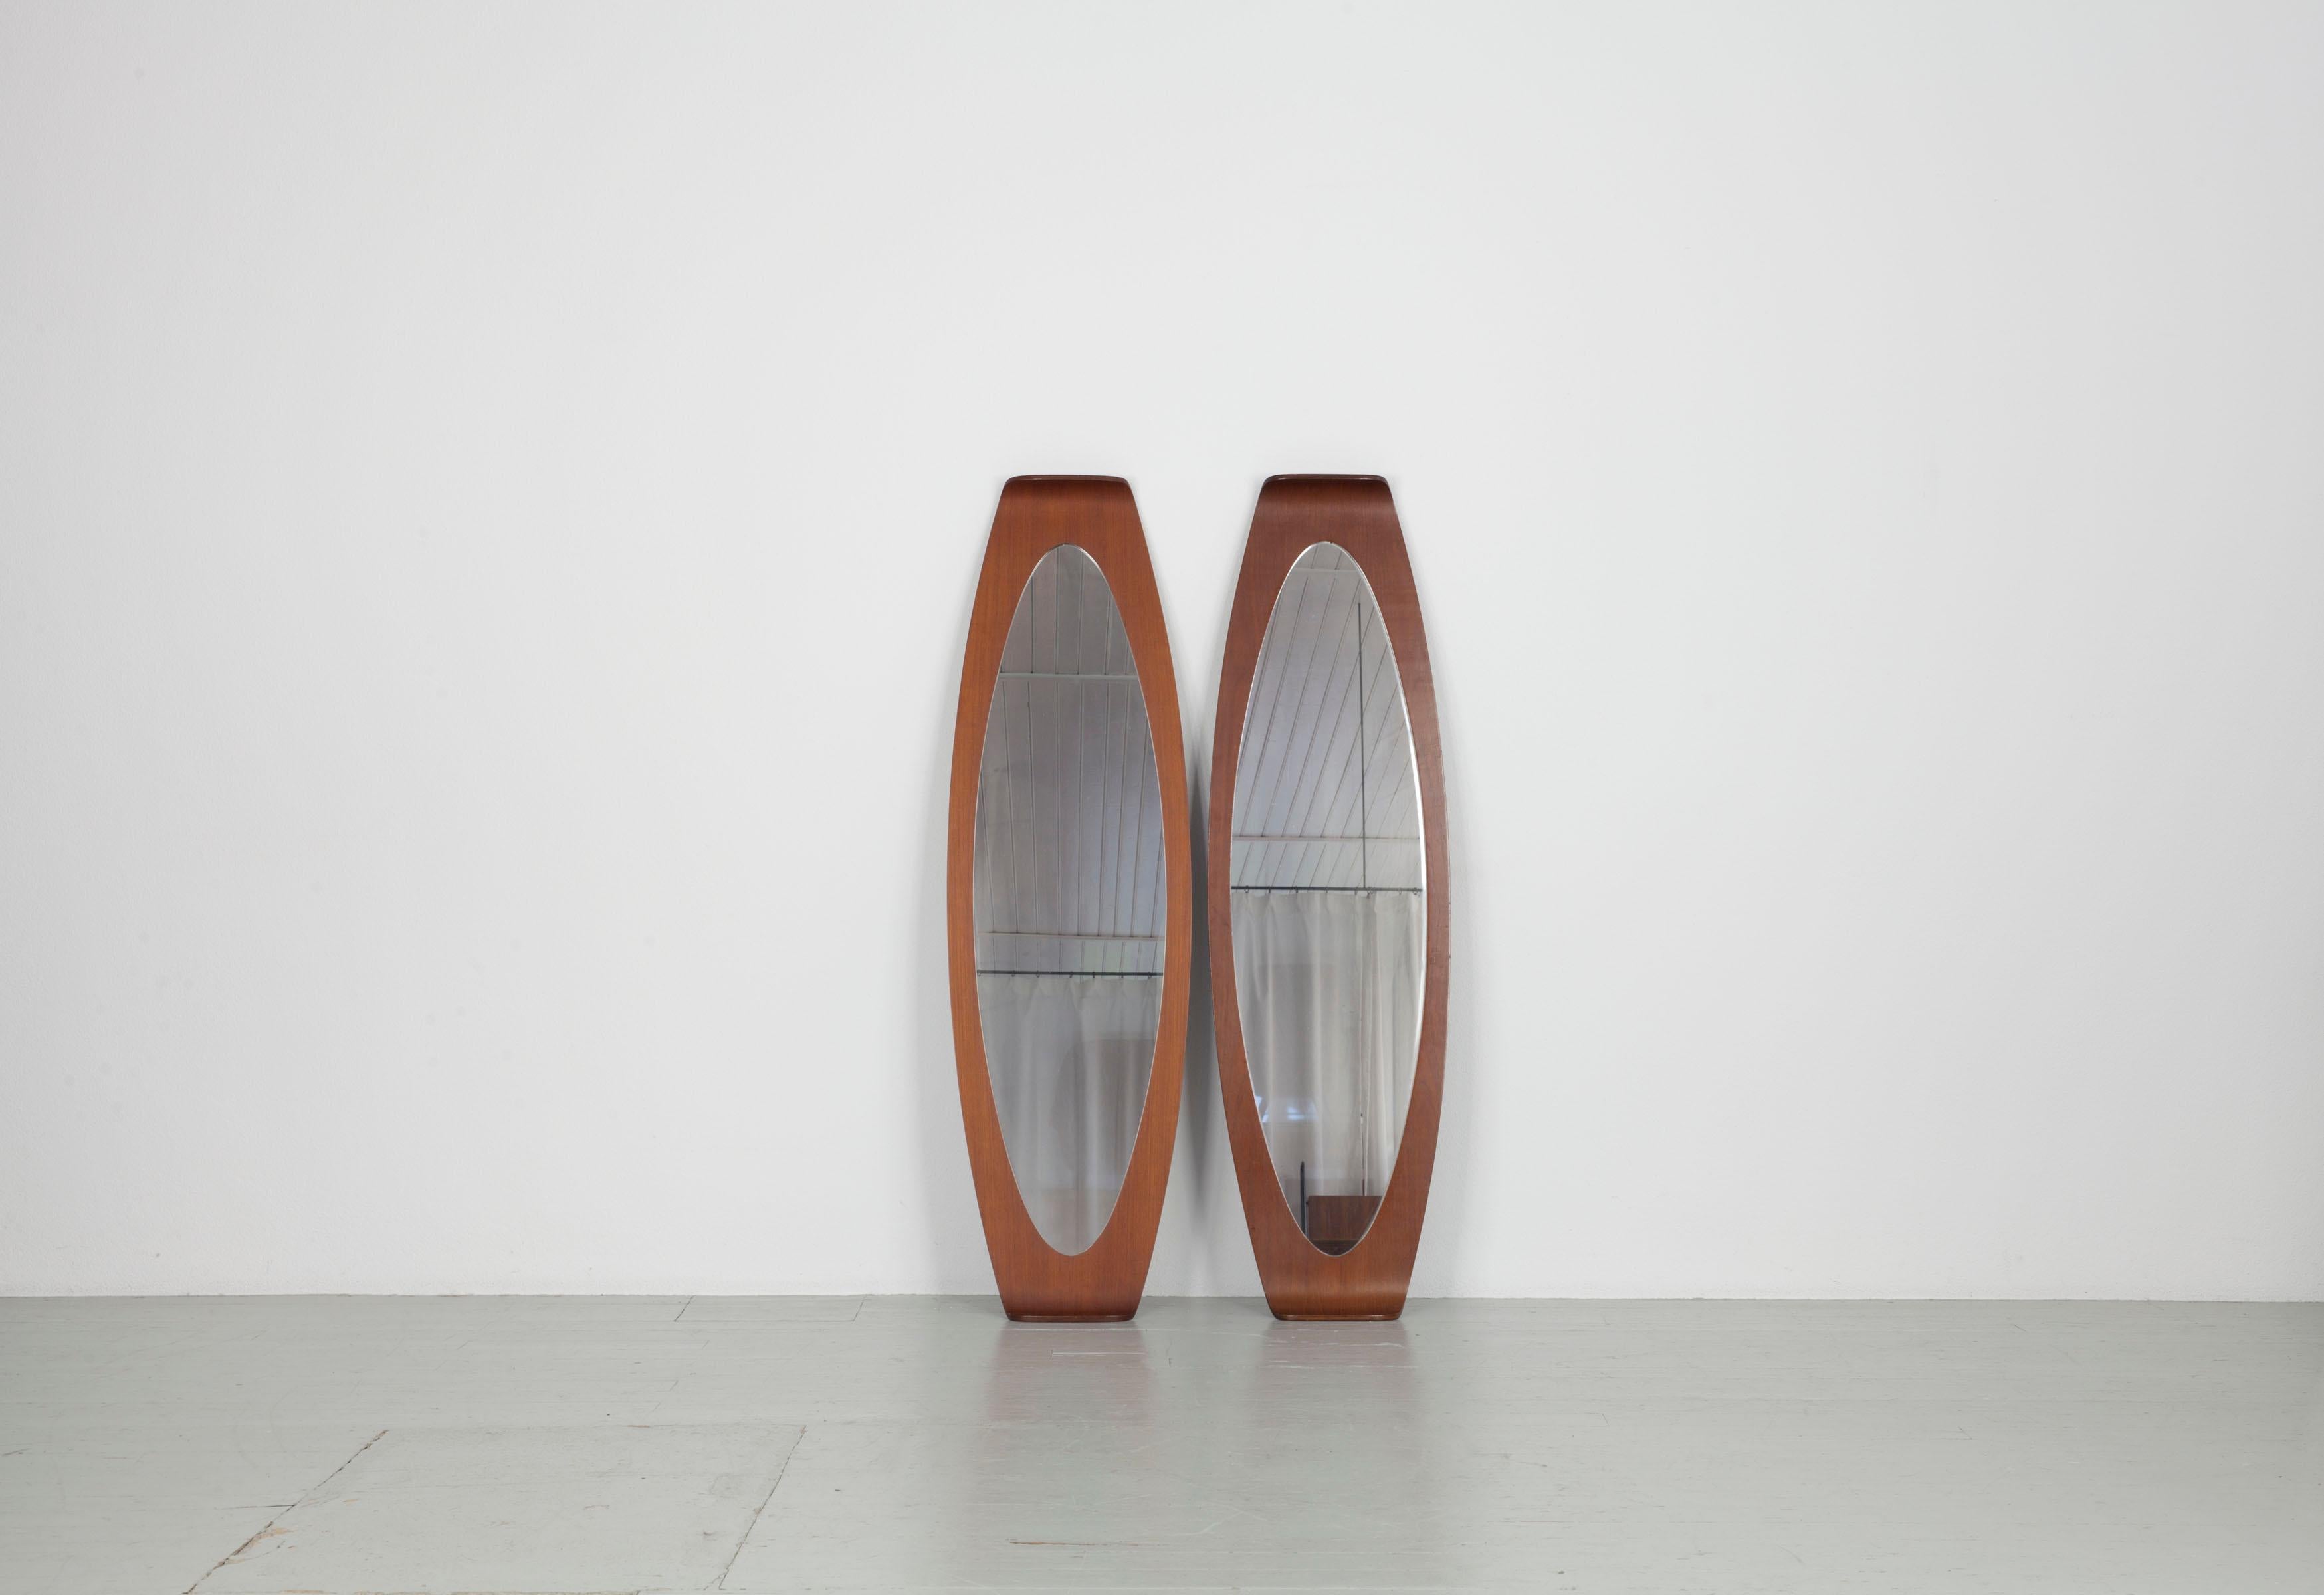 Cet ensemble de miroirs italiens de forme ovale allongée date des années 60. Le décor a été conçu par Franco Campo et Carlo Graffi. Les deux miroirs ont une forme très particulière, la longueur ovale du teck est courbée aux deux extrémités, ce qui